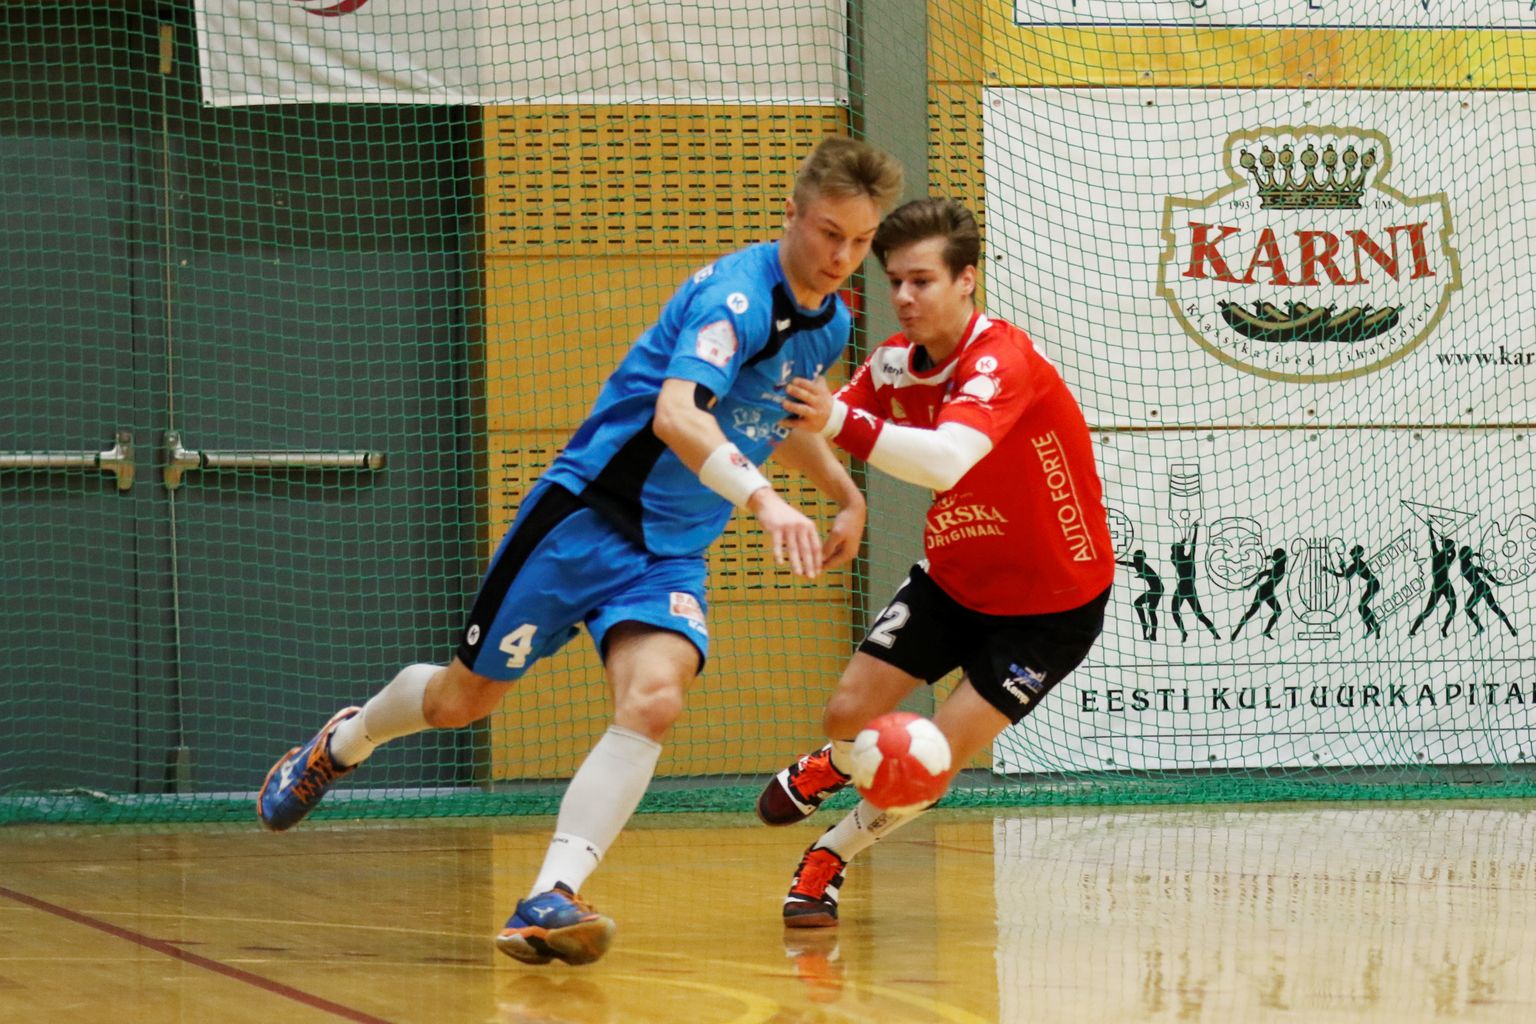 Noored Serviti mängijad särasid väravatega. Sander Sarapuu (pildil punases nr 2) viskas koduklubi eest kokku 6 väravat.